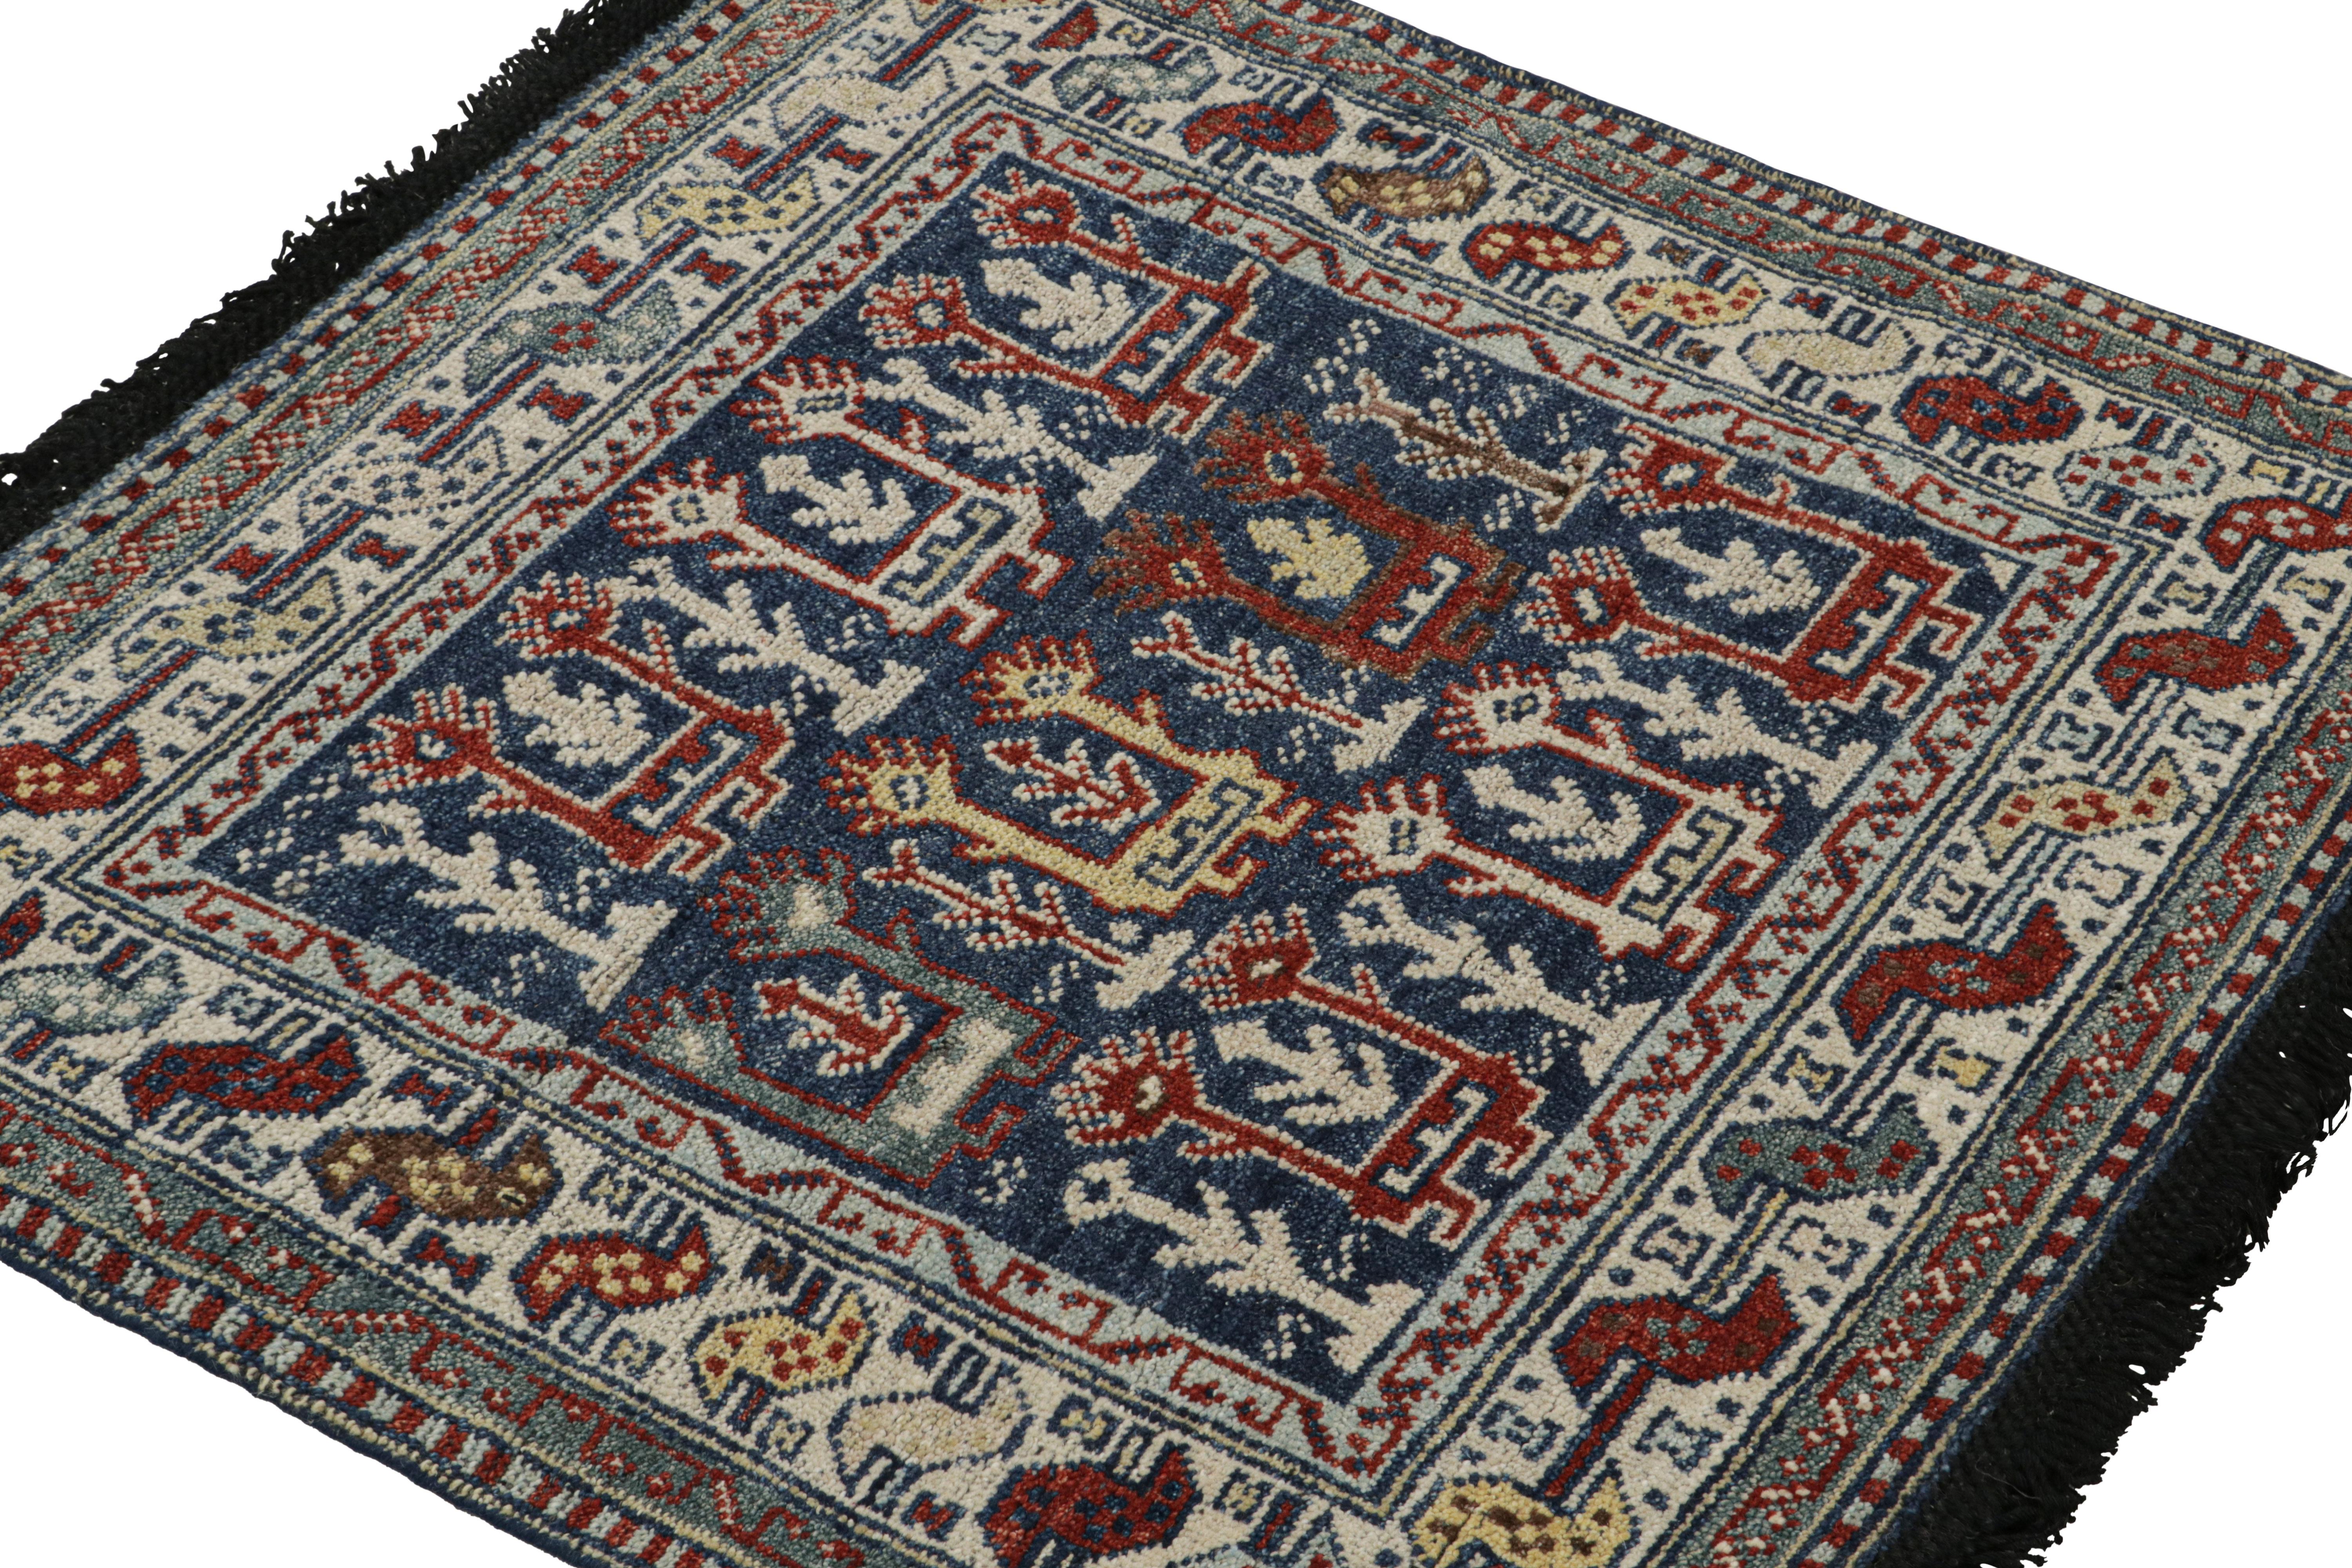 Inspiré par d'anciens tapis tribaux à l'esthétique similaire, tels que les tapis caucasiens Kuba et certains tapis persans, ce tapis carré 3x3 de notre collection Burano est noué à la main en laine Ghazni. 

Sur le Design : 

Particulièrement